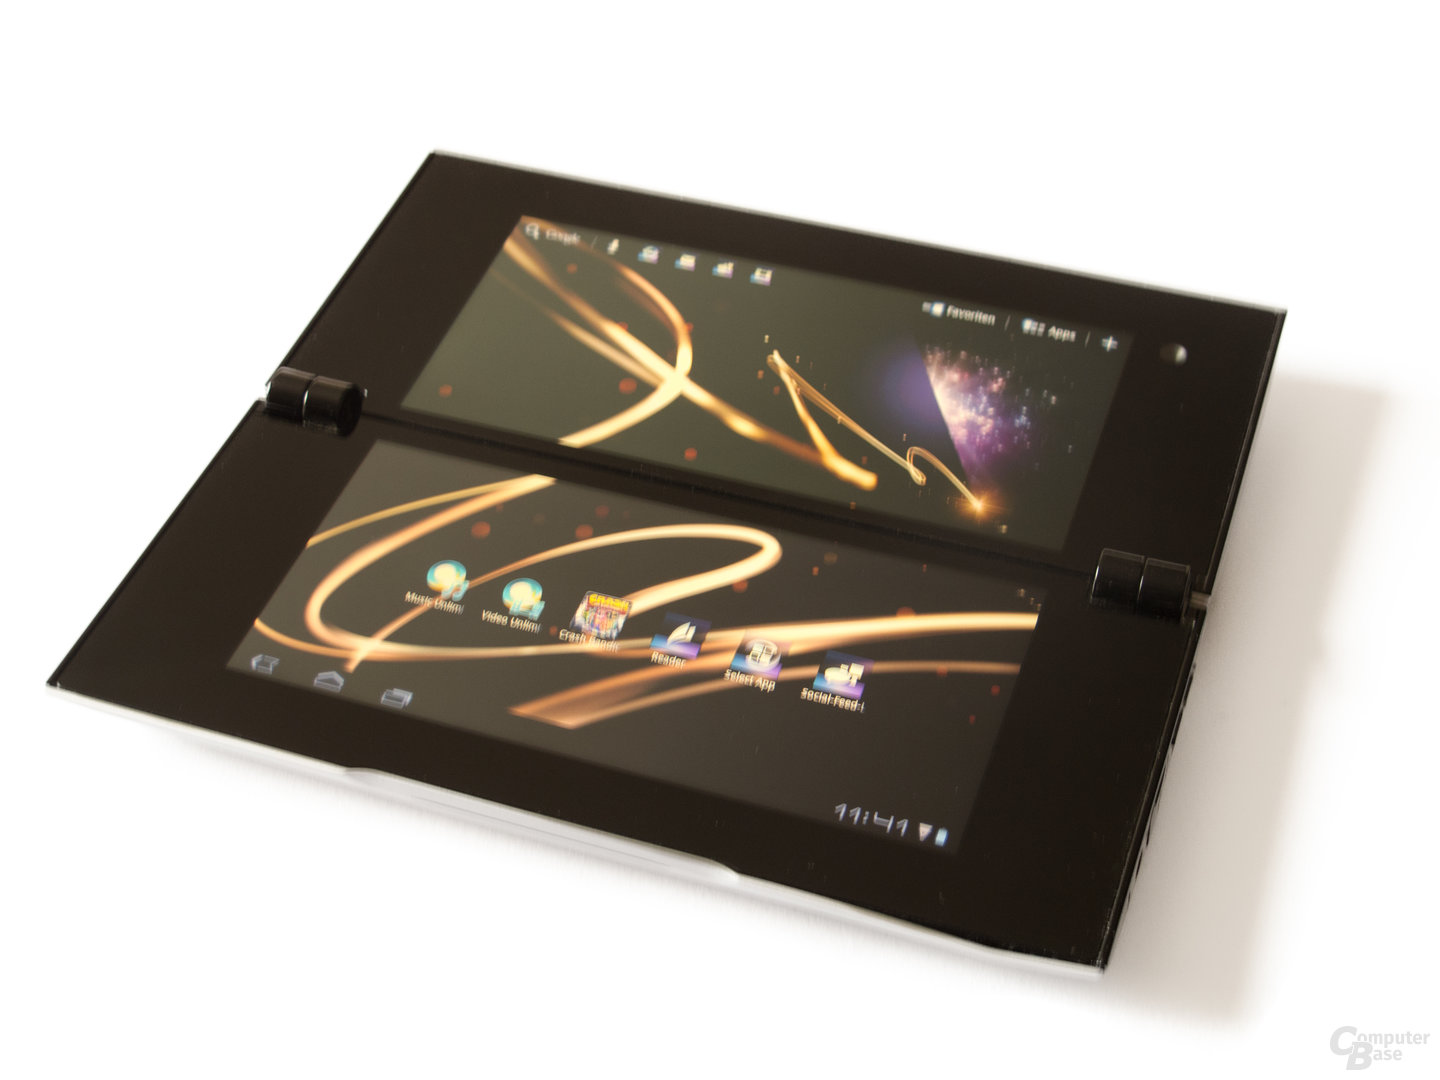 Sony Tablet P: Schnellzugriffe am oberen Bildschirmrand und eigene Dienste